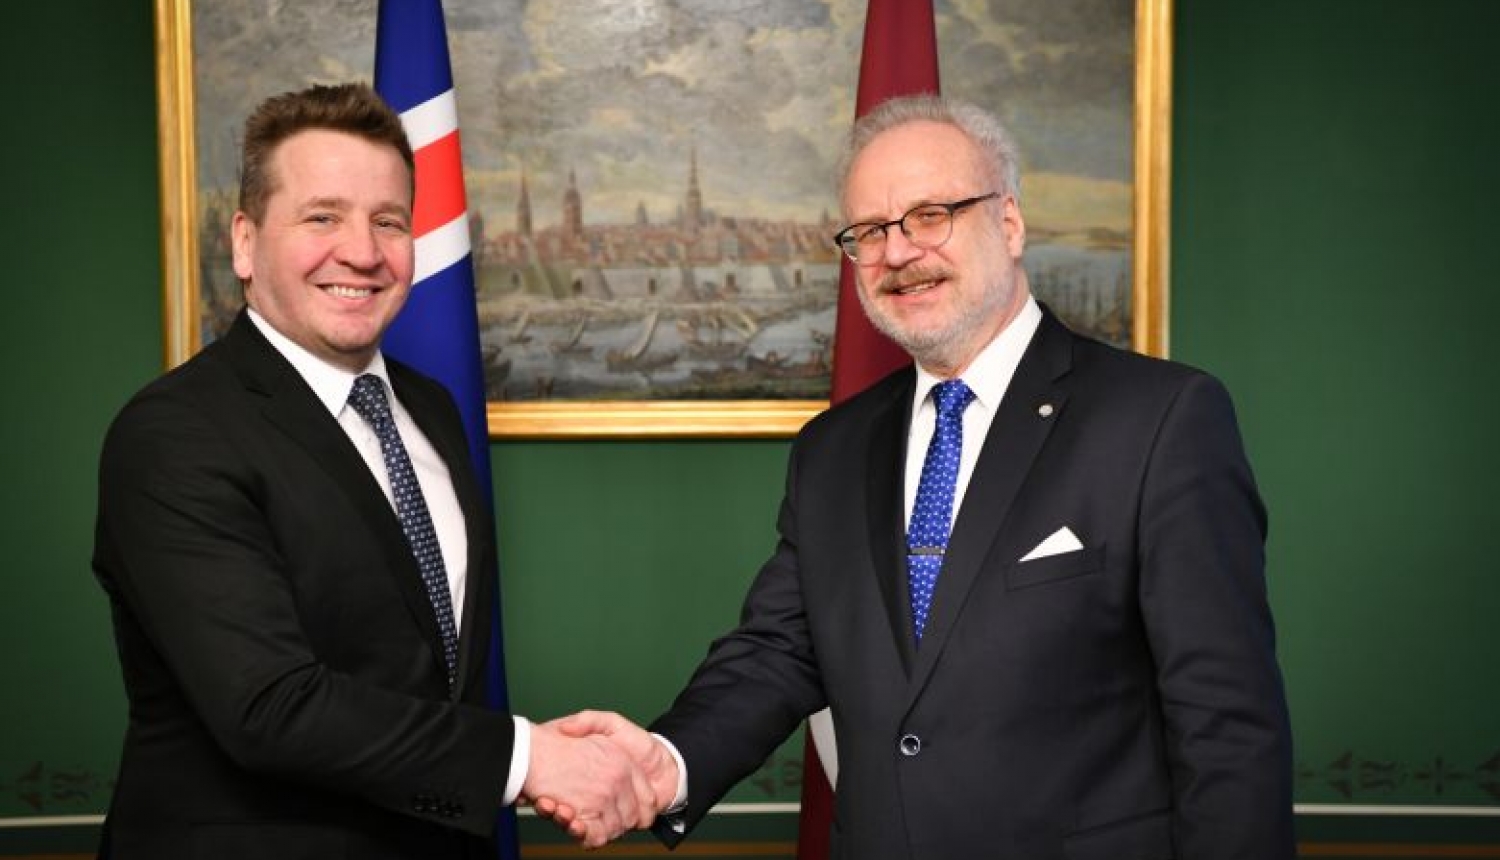 Valsts prezidents: Islandei ir ļoti nozīmīga loma Latvijas neatkarības atjaunošanā